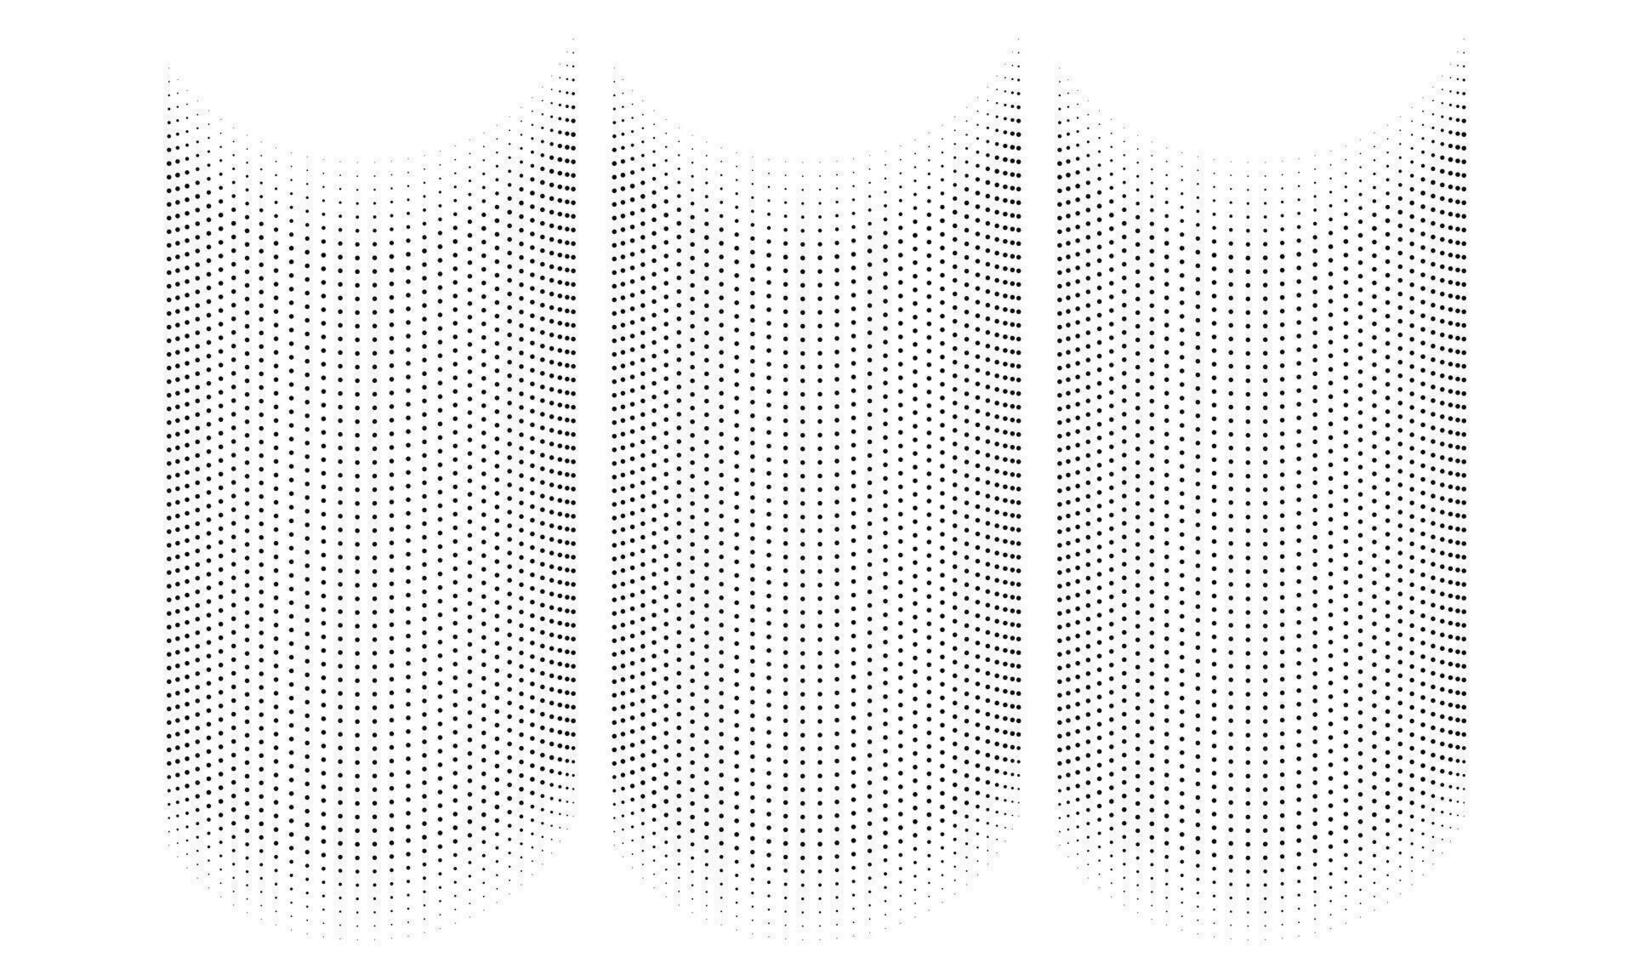 vektor svart och vit halvton prickar böjd lutning mönster textur isolerat på vit bakgrund kurva prickad fläckar halvton cirkel punkt utplåna textur samling